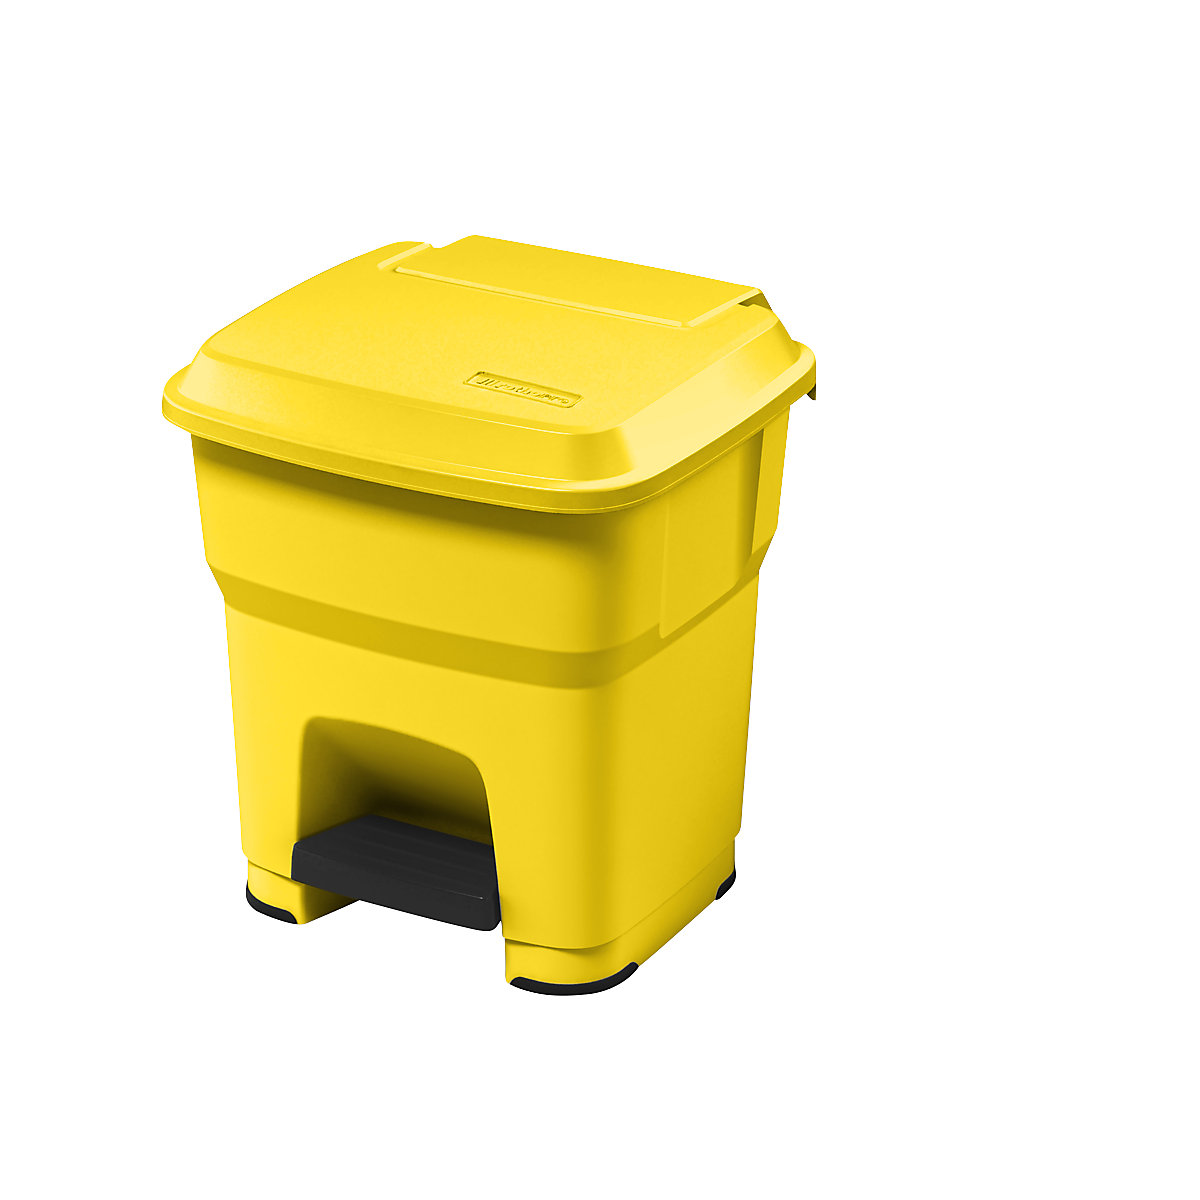 Collecteur de déchets à pédale HERA – rothopro, capacité 35 l, l x h x p 390 x 440 x 390 mm, jaune